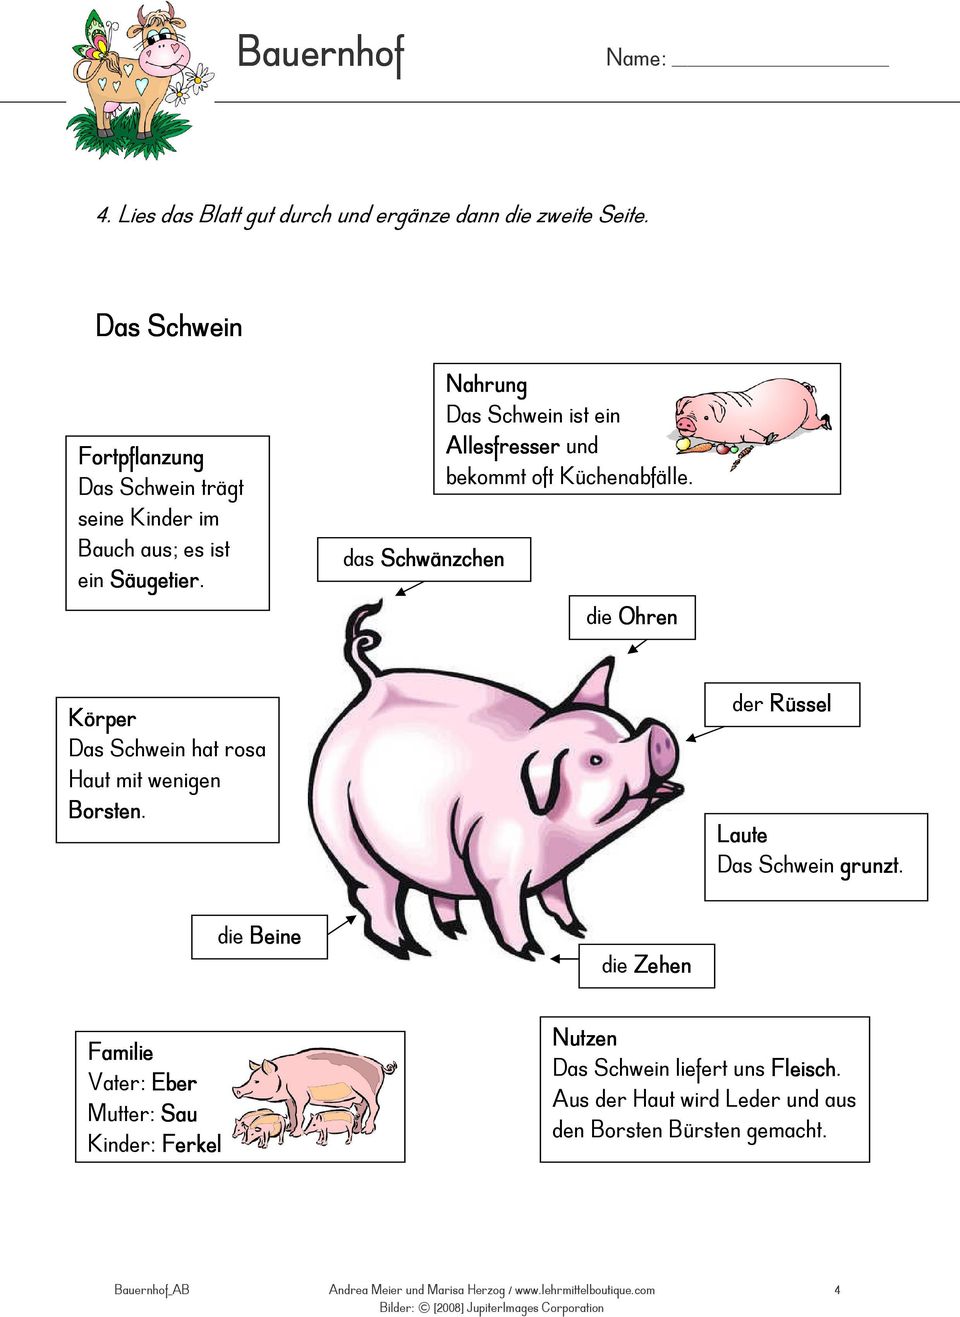 Das Schwein ist ein Allesfresser und bekommt oft Küchenabfälle.